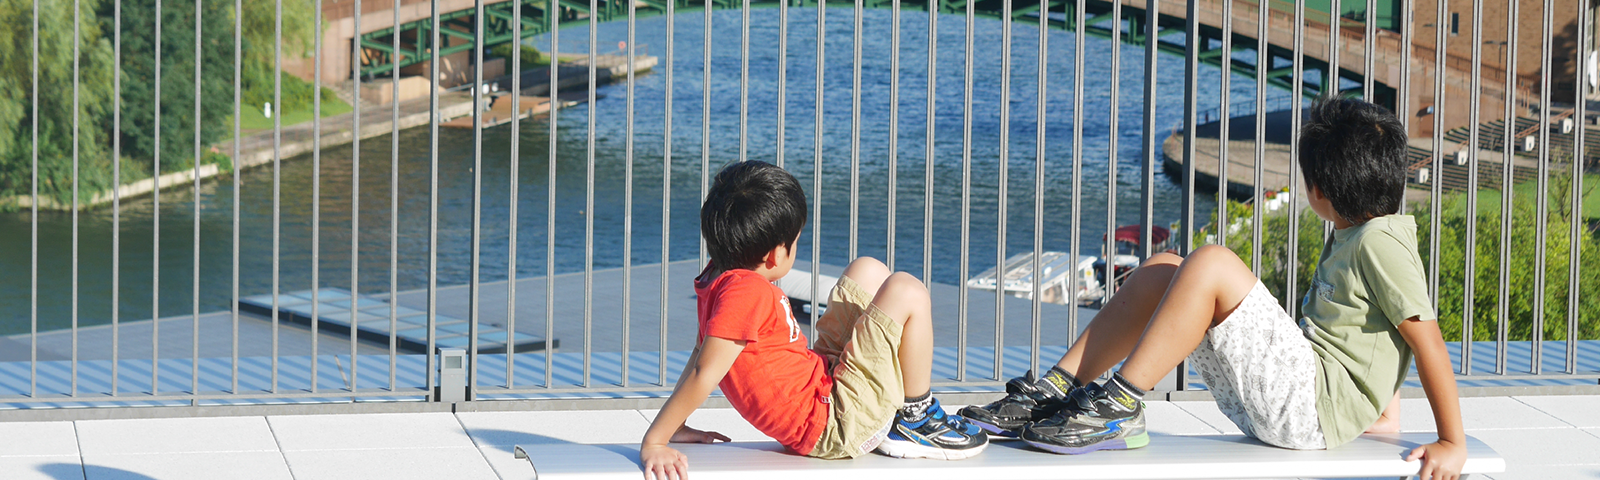 子どもが環水公園の橋を座って見ている写真